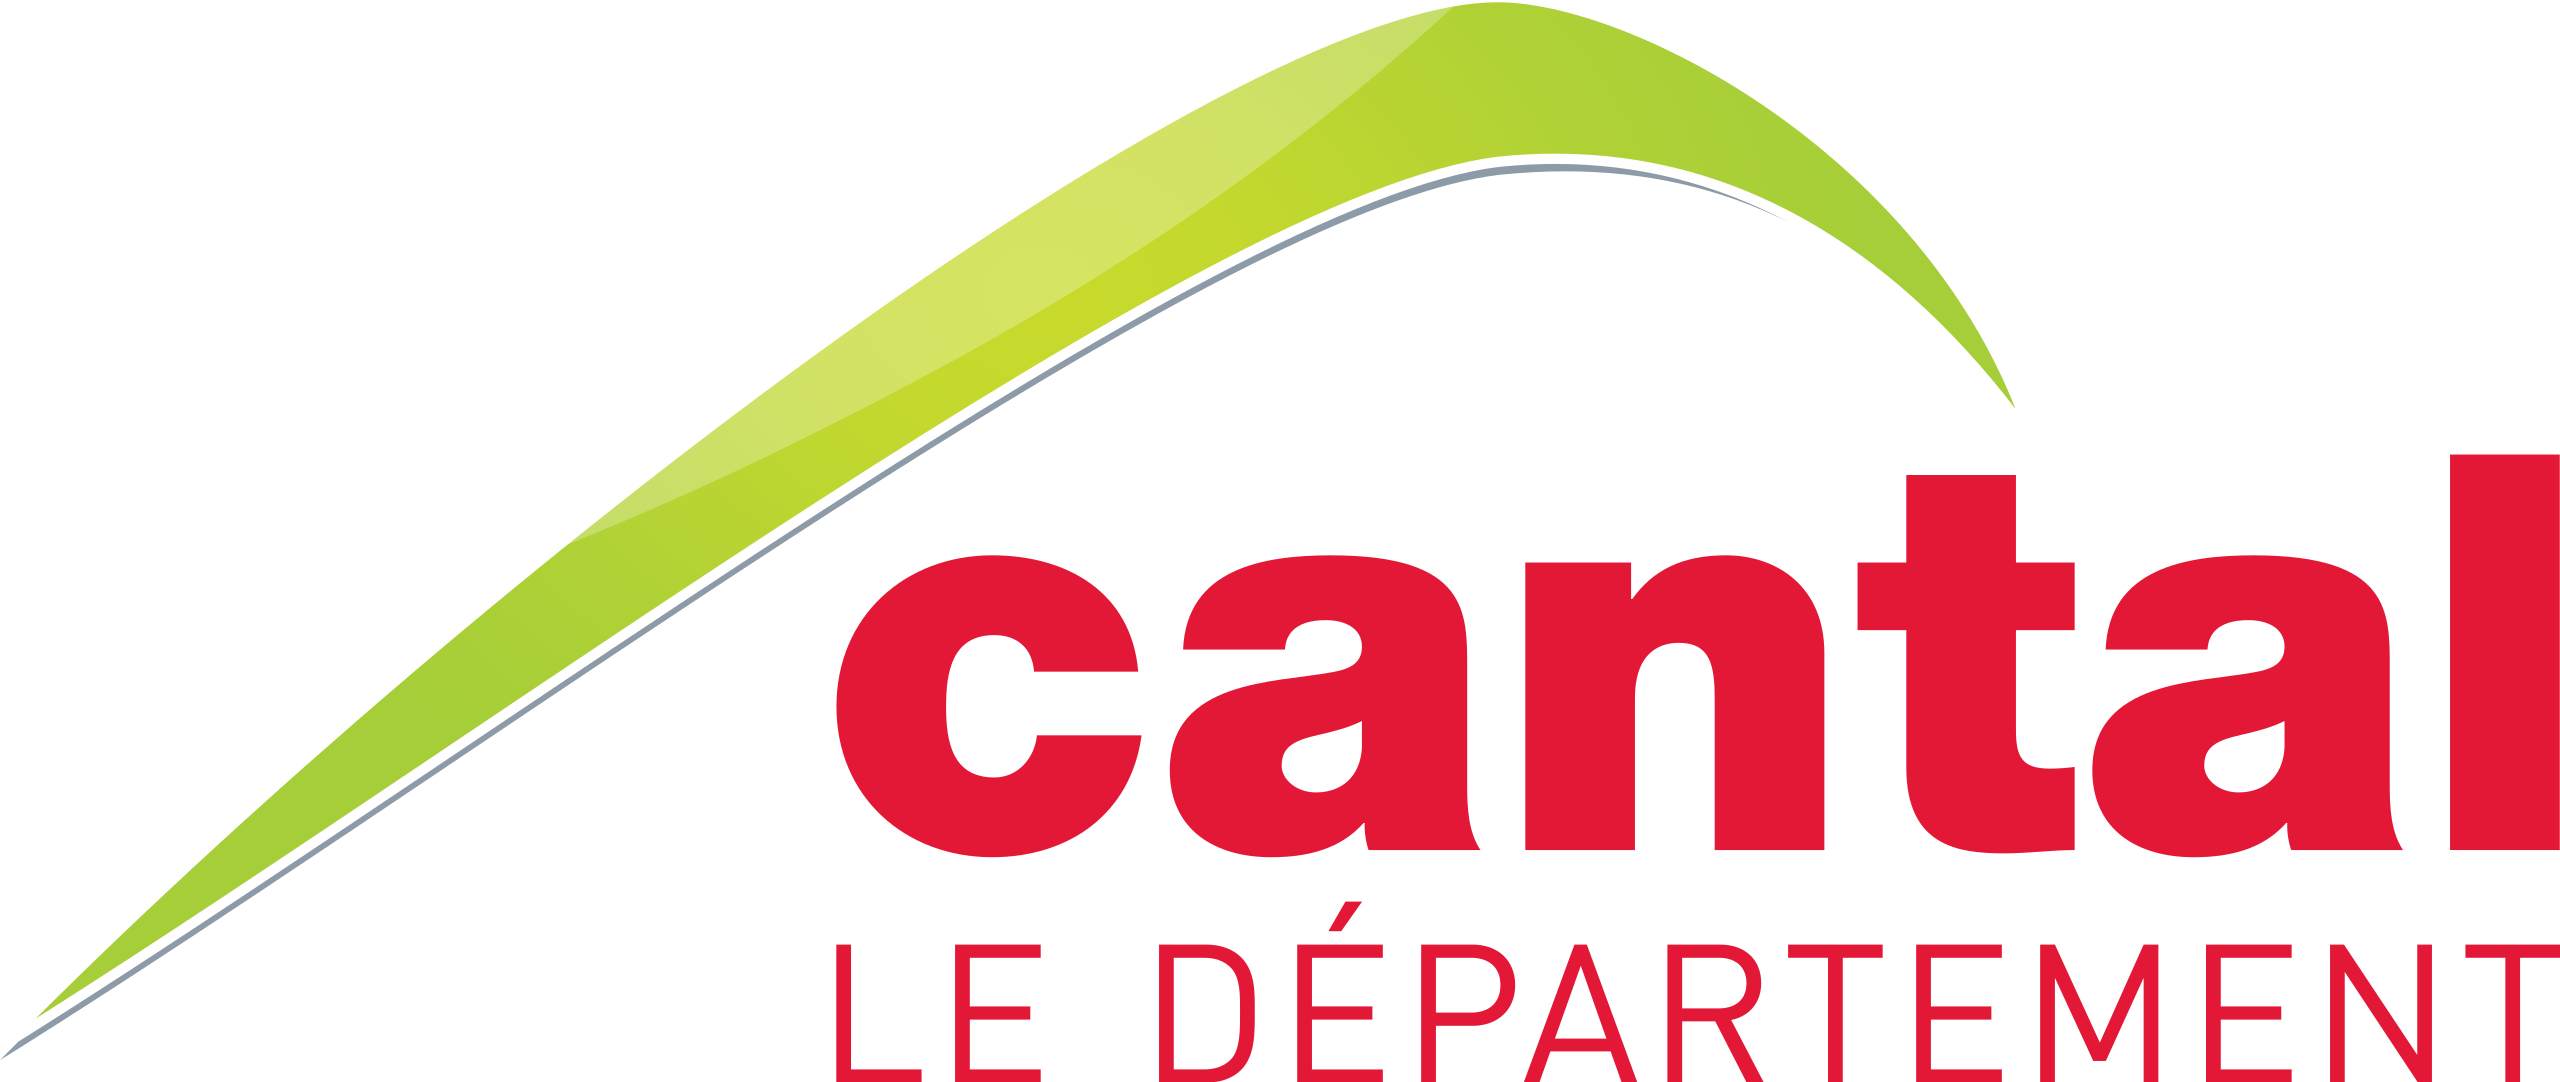 vacances scolaires département Cantal